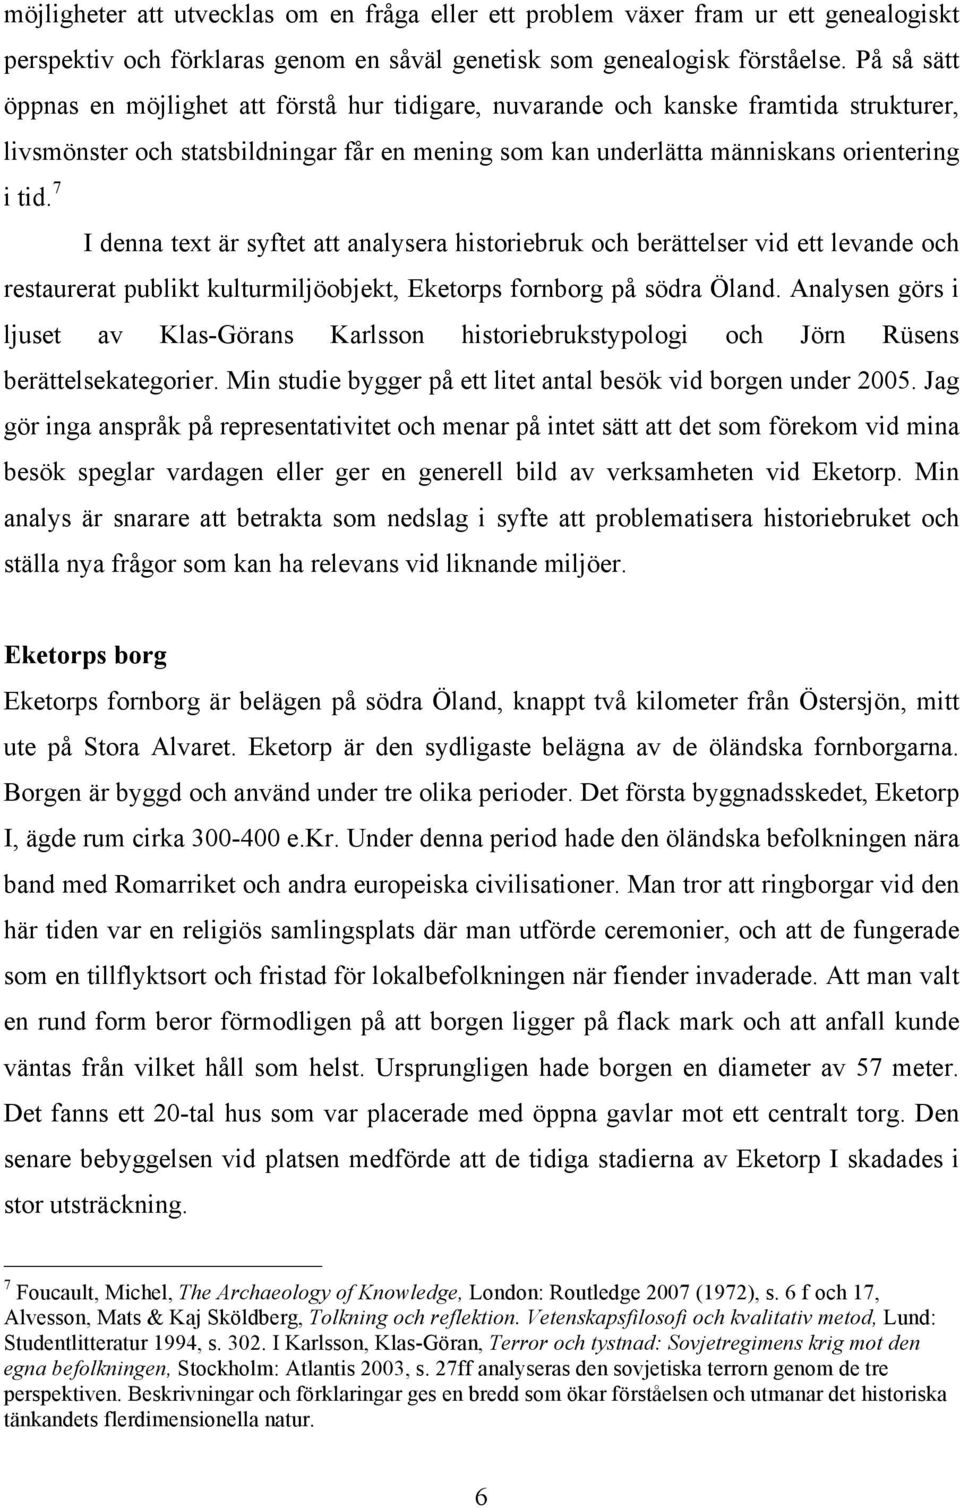 7 I denna text är syftet att analysera historiebruk och berättelser vid ett levande och restaurerat publikt kulturmiljöobjekt, Eketorps fornborg på södra Öland.